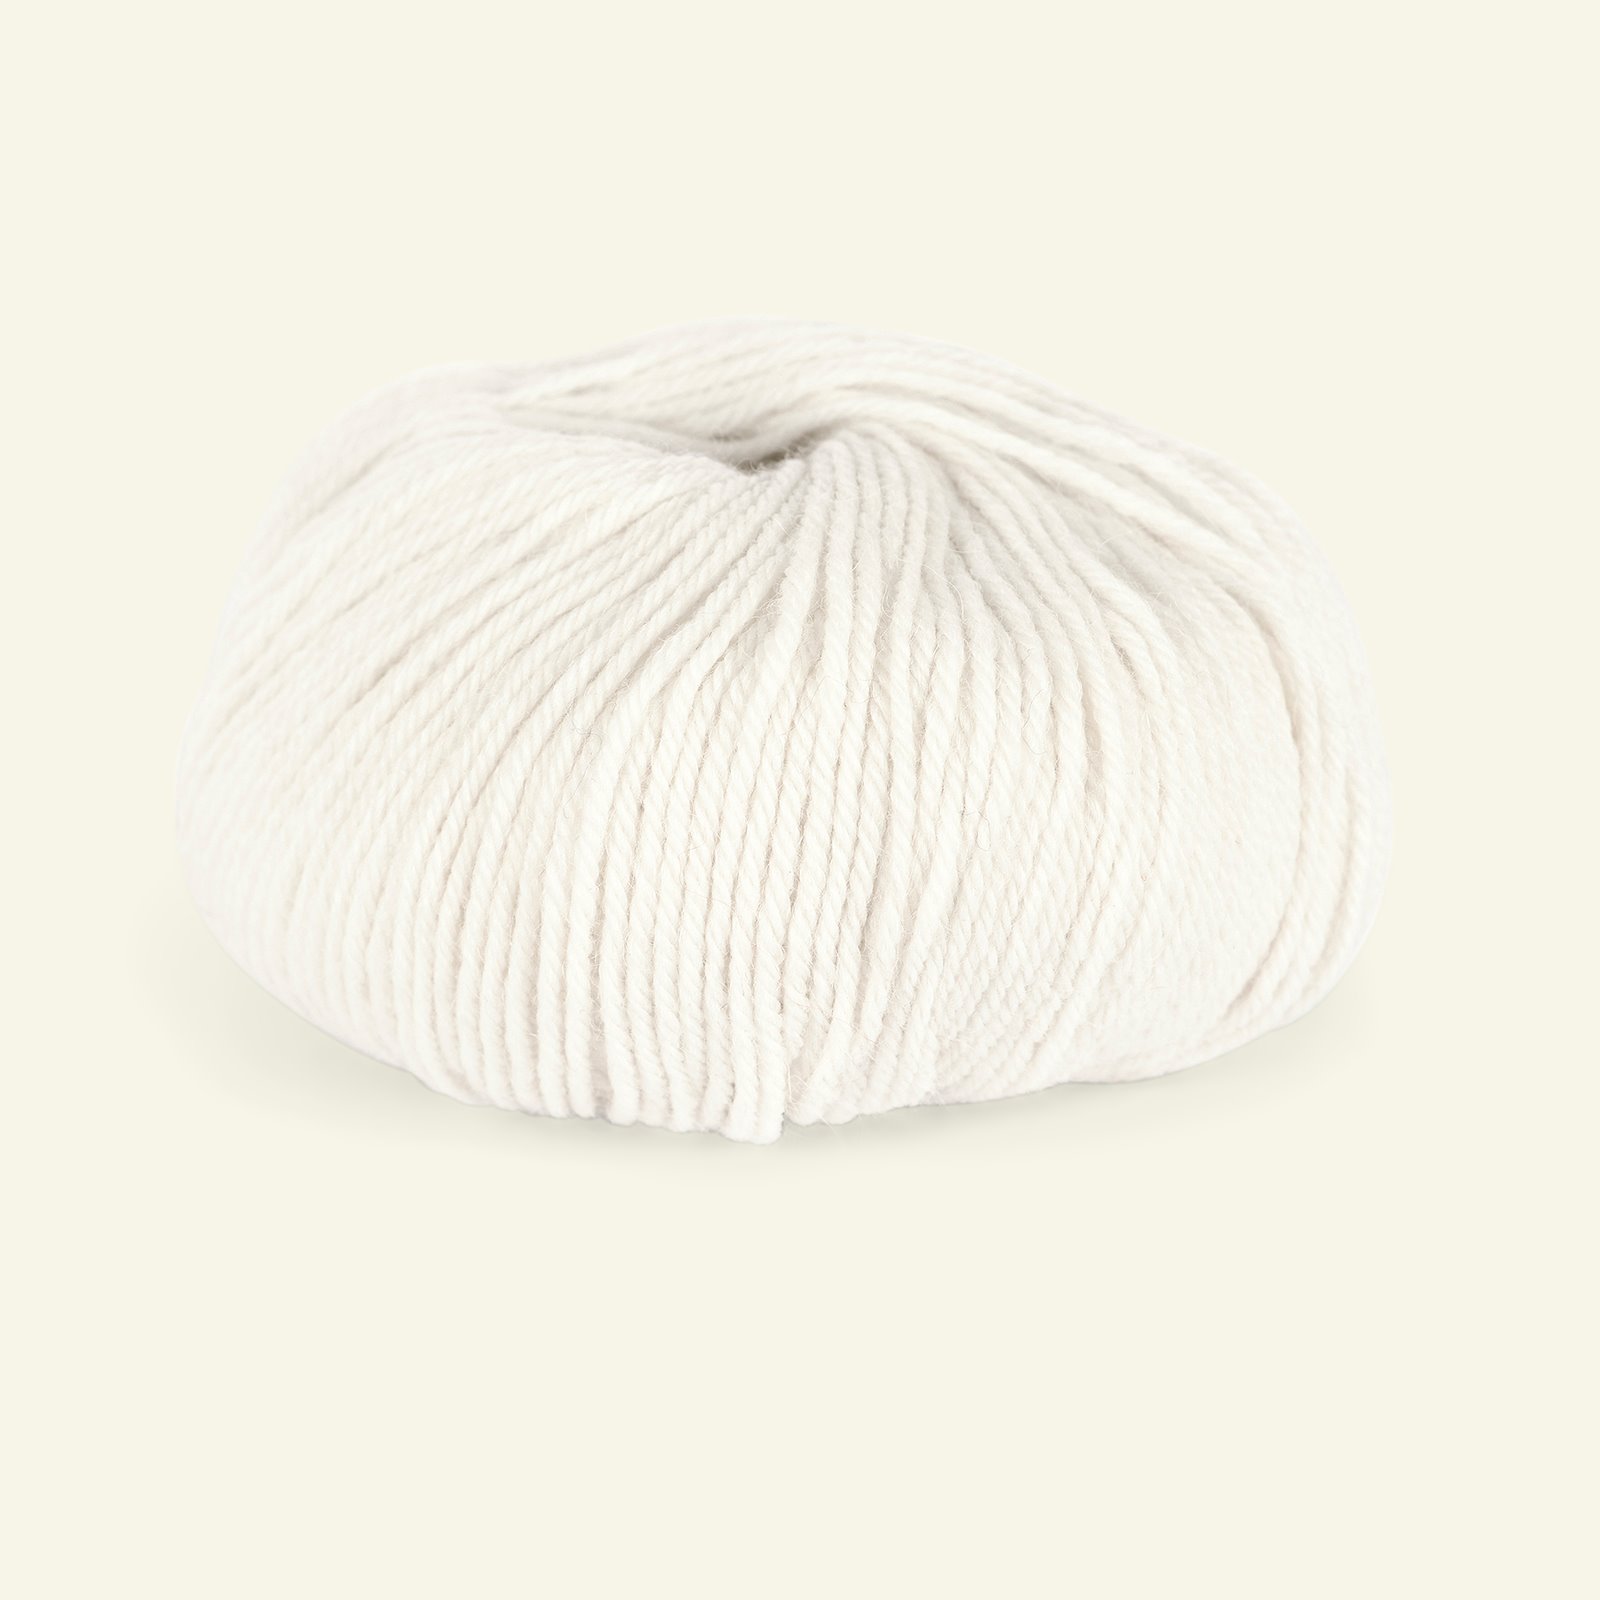 Du Store Alpakka, alpaca merino mixed yarn "Sterk", white (851) 90000677_pack_b